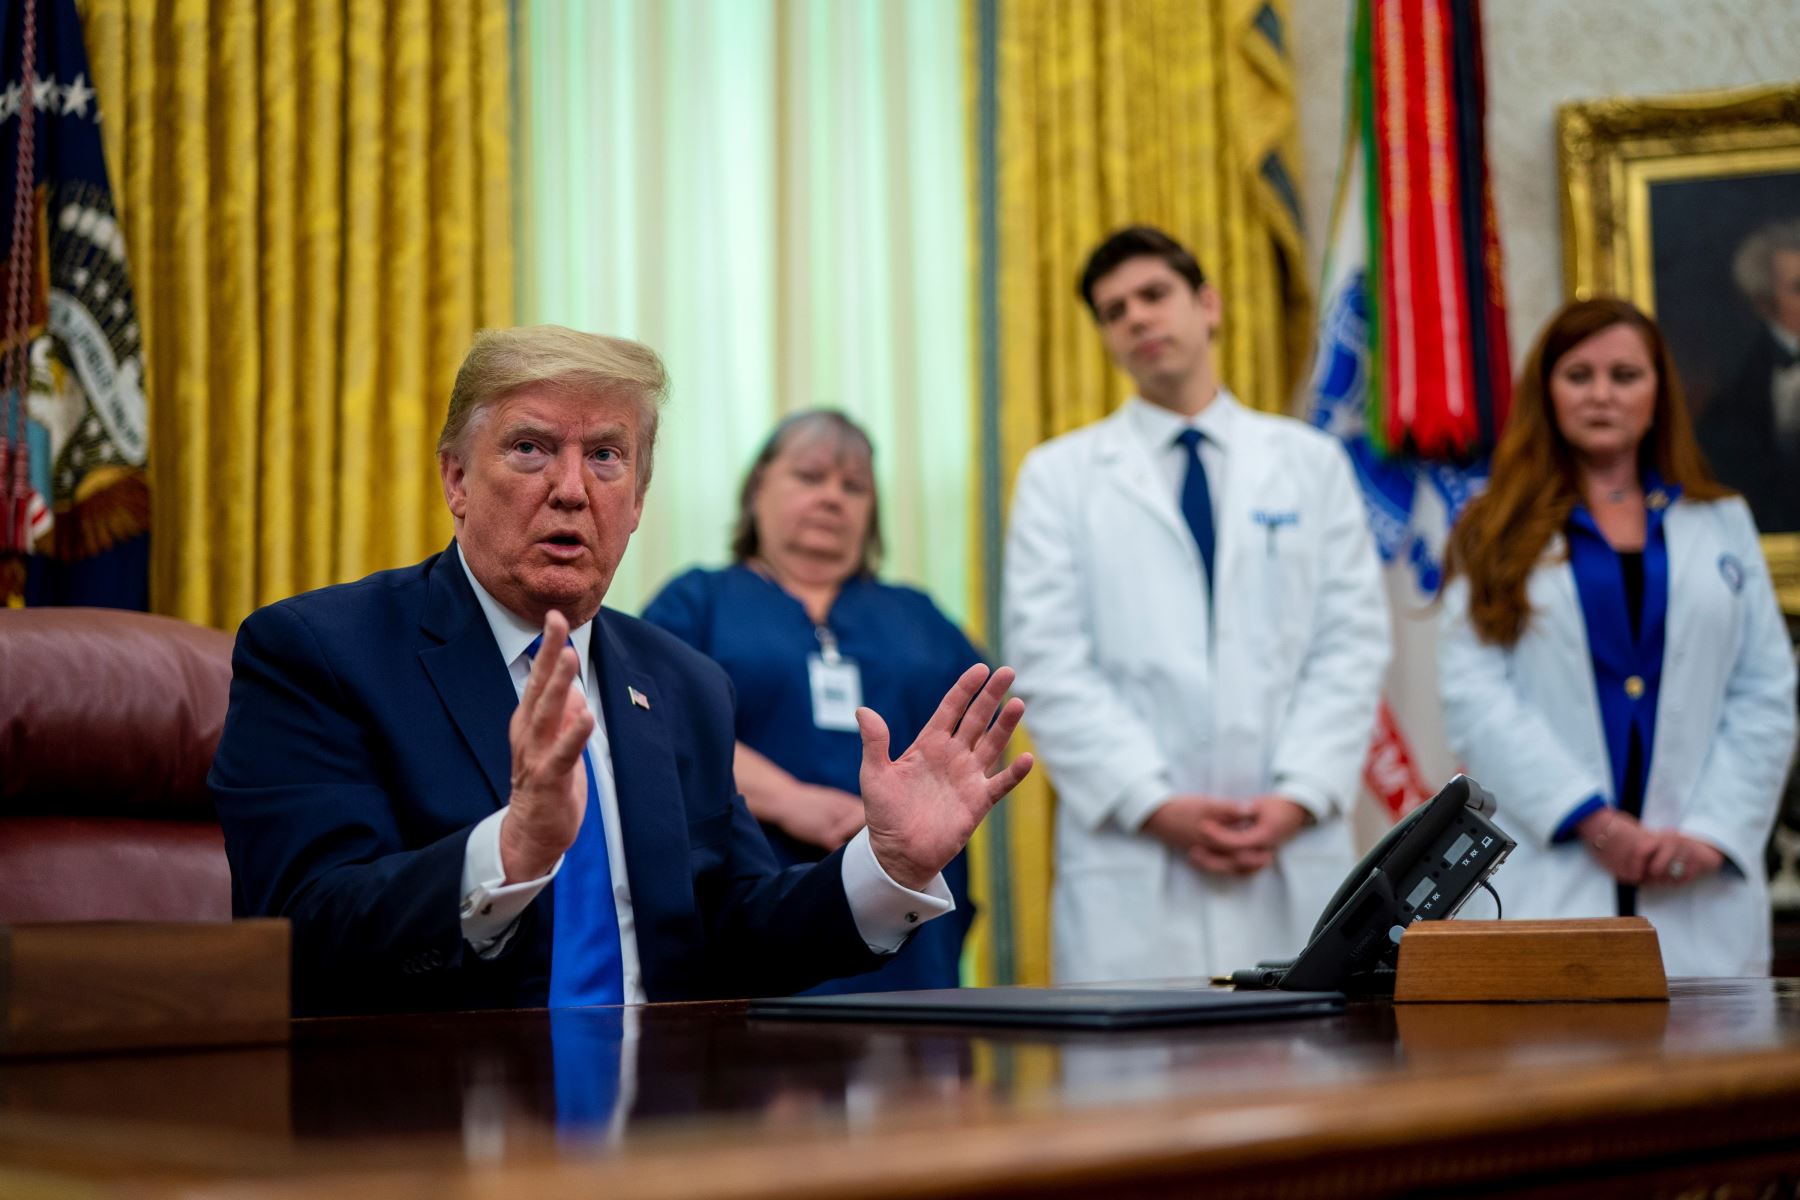 El presidente de los Estados Unidos, Donald Trump, hace comentarios al firmar una Proclamación en honor del Día Nacional de las Enfermeras en la Oficina Oval, en la Casa Blanca, Washington, EE. UU. Foto: EFE